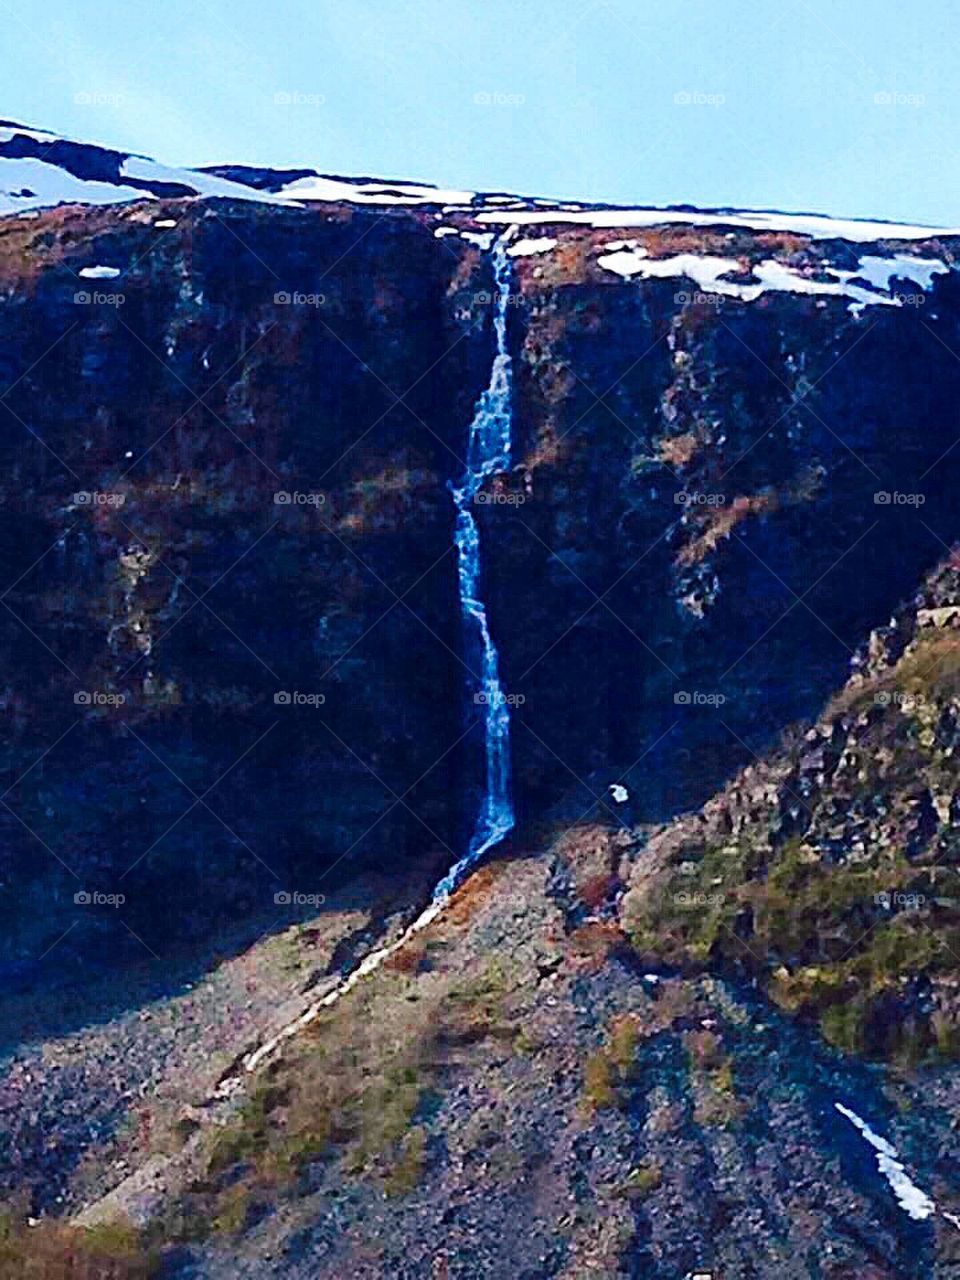 Waterfall in the mountain